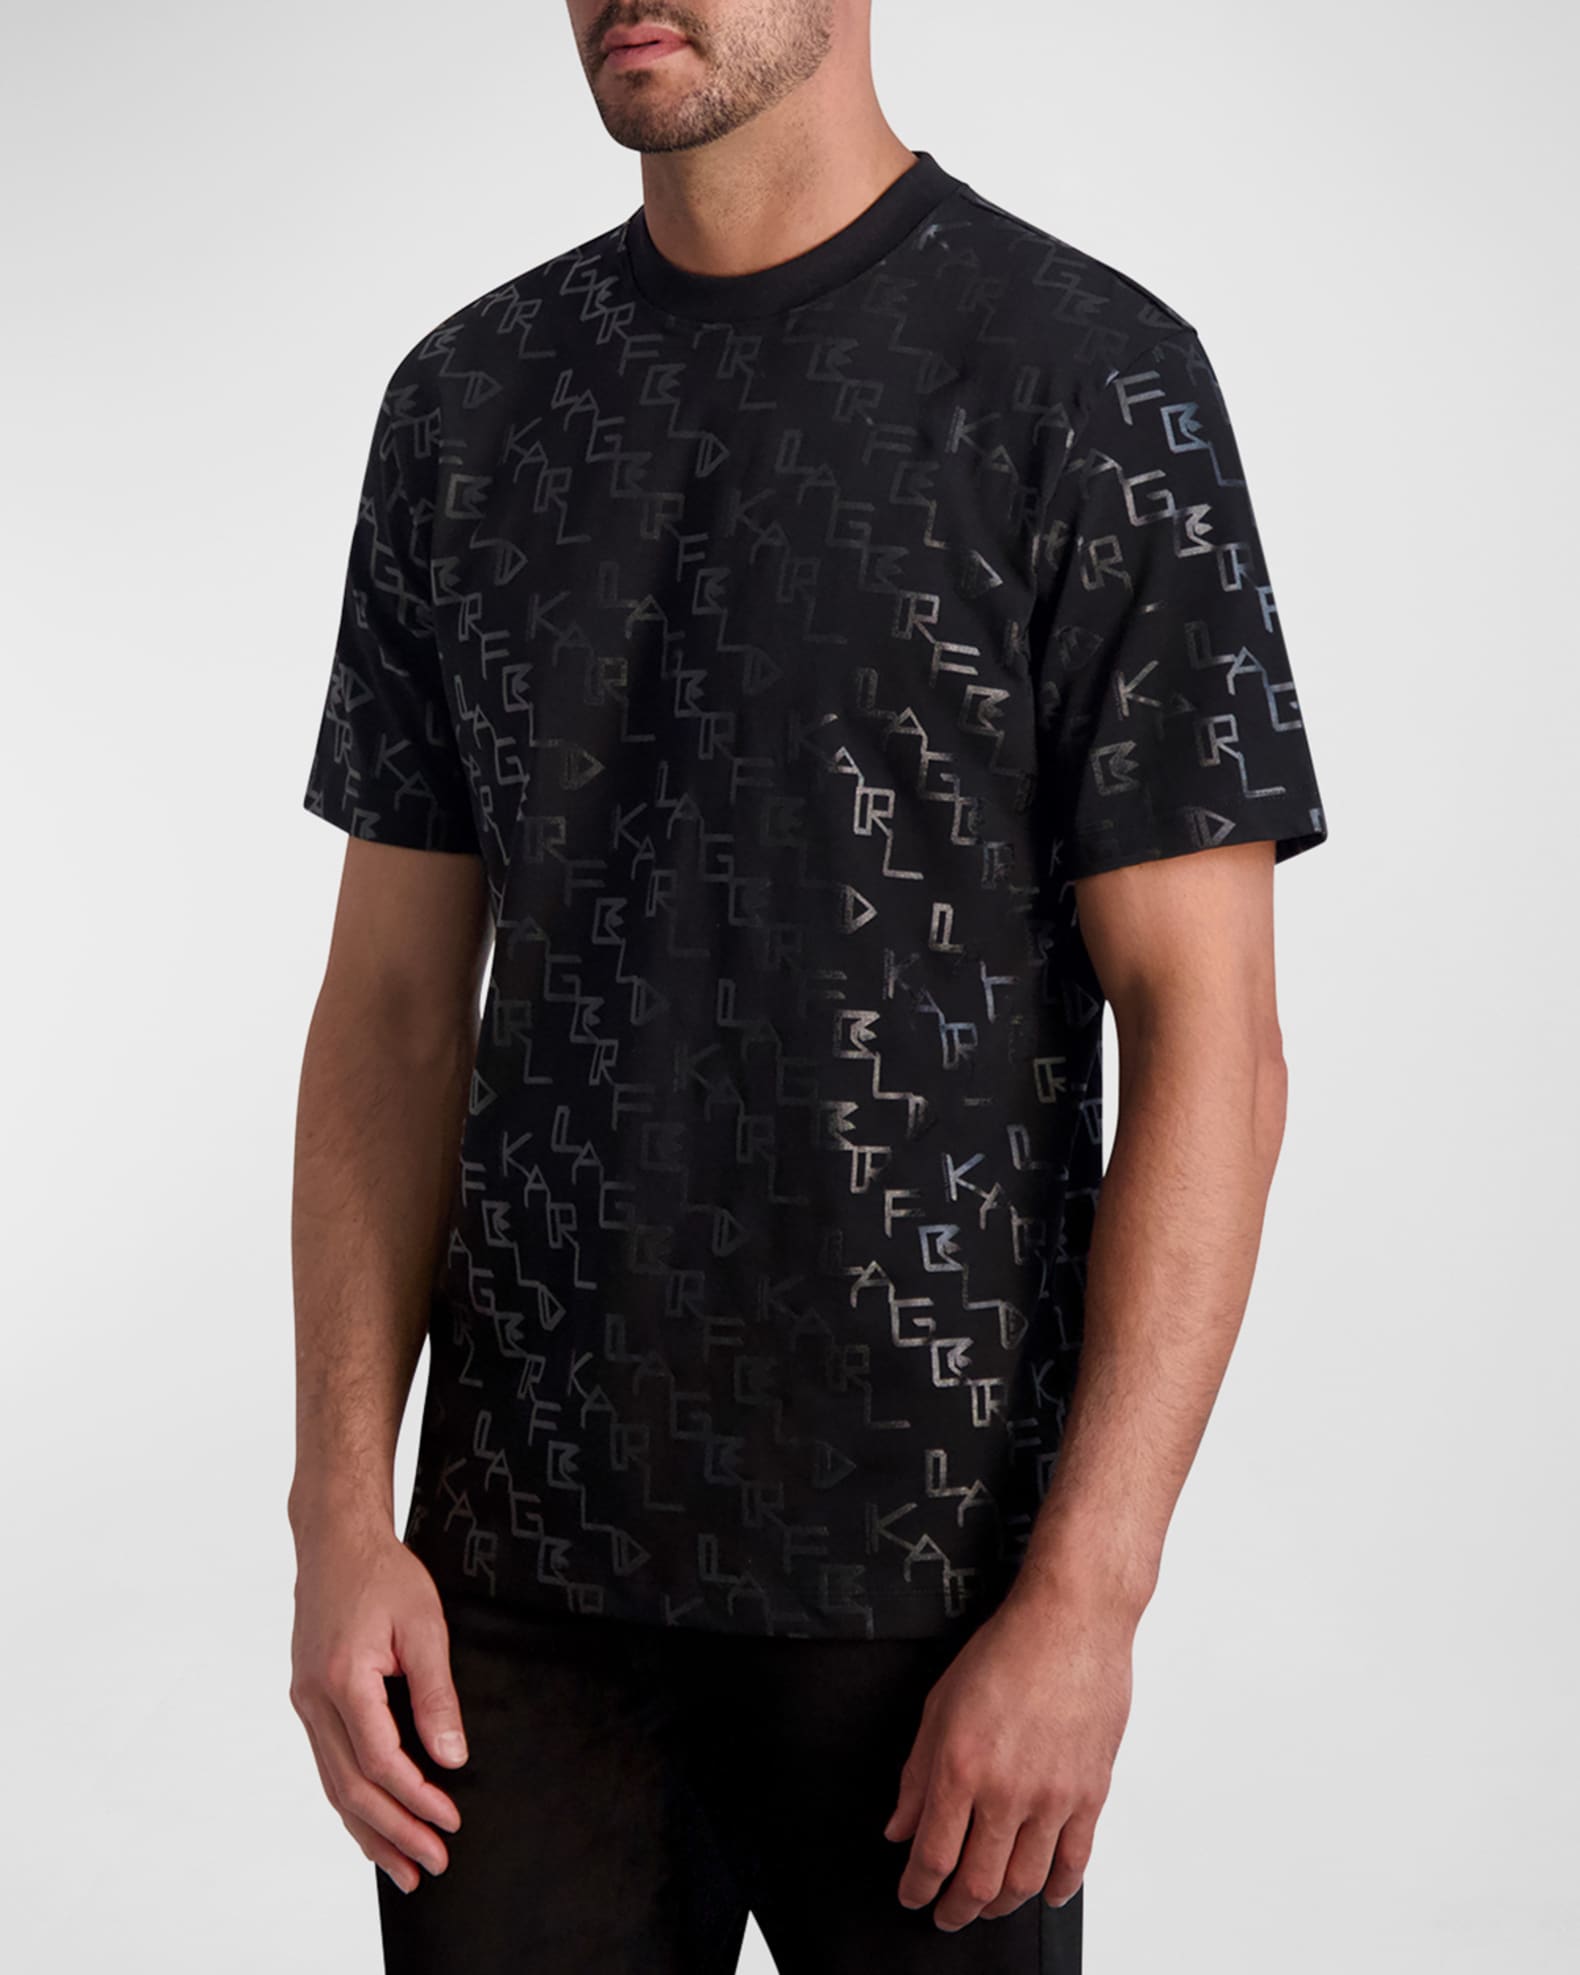 Louis Vuitton Black Cotton Allover Logos Printed Crewneck T-Shirt